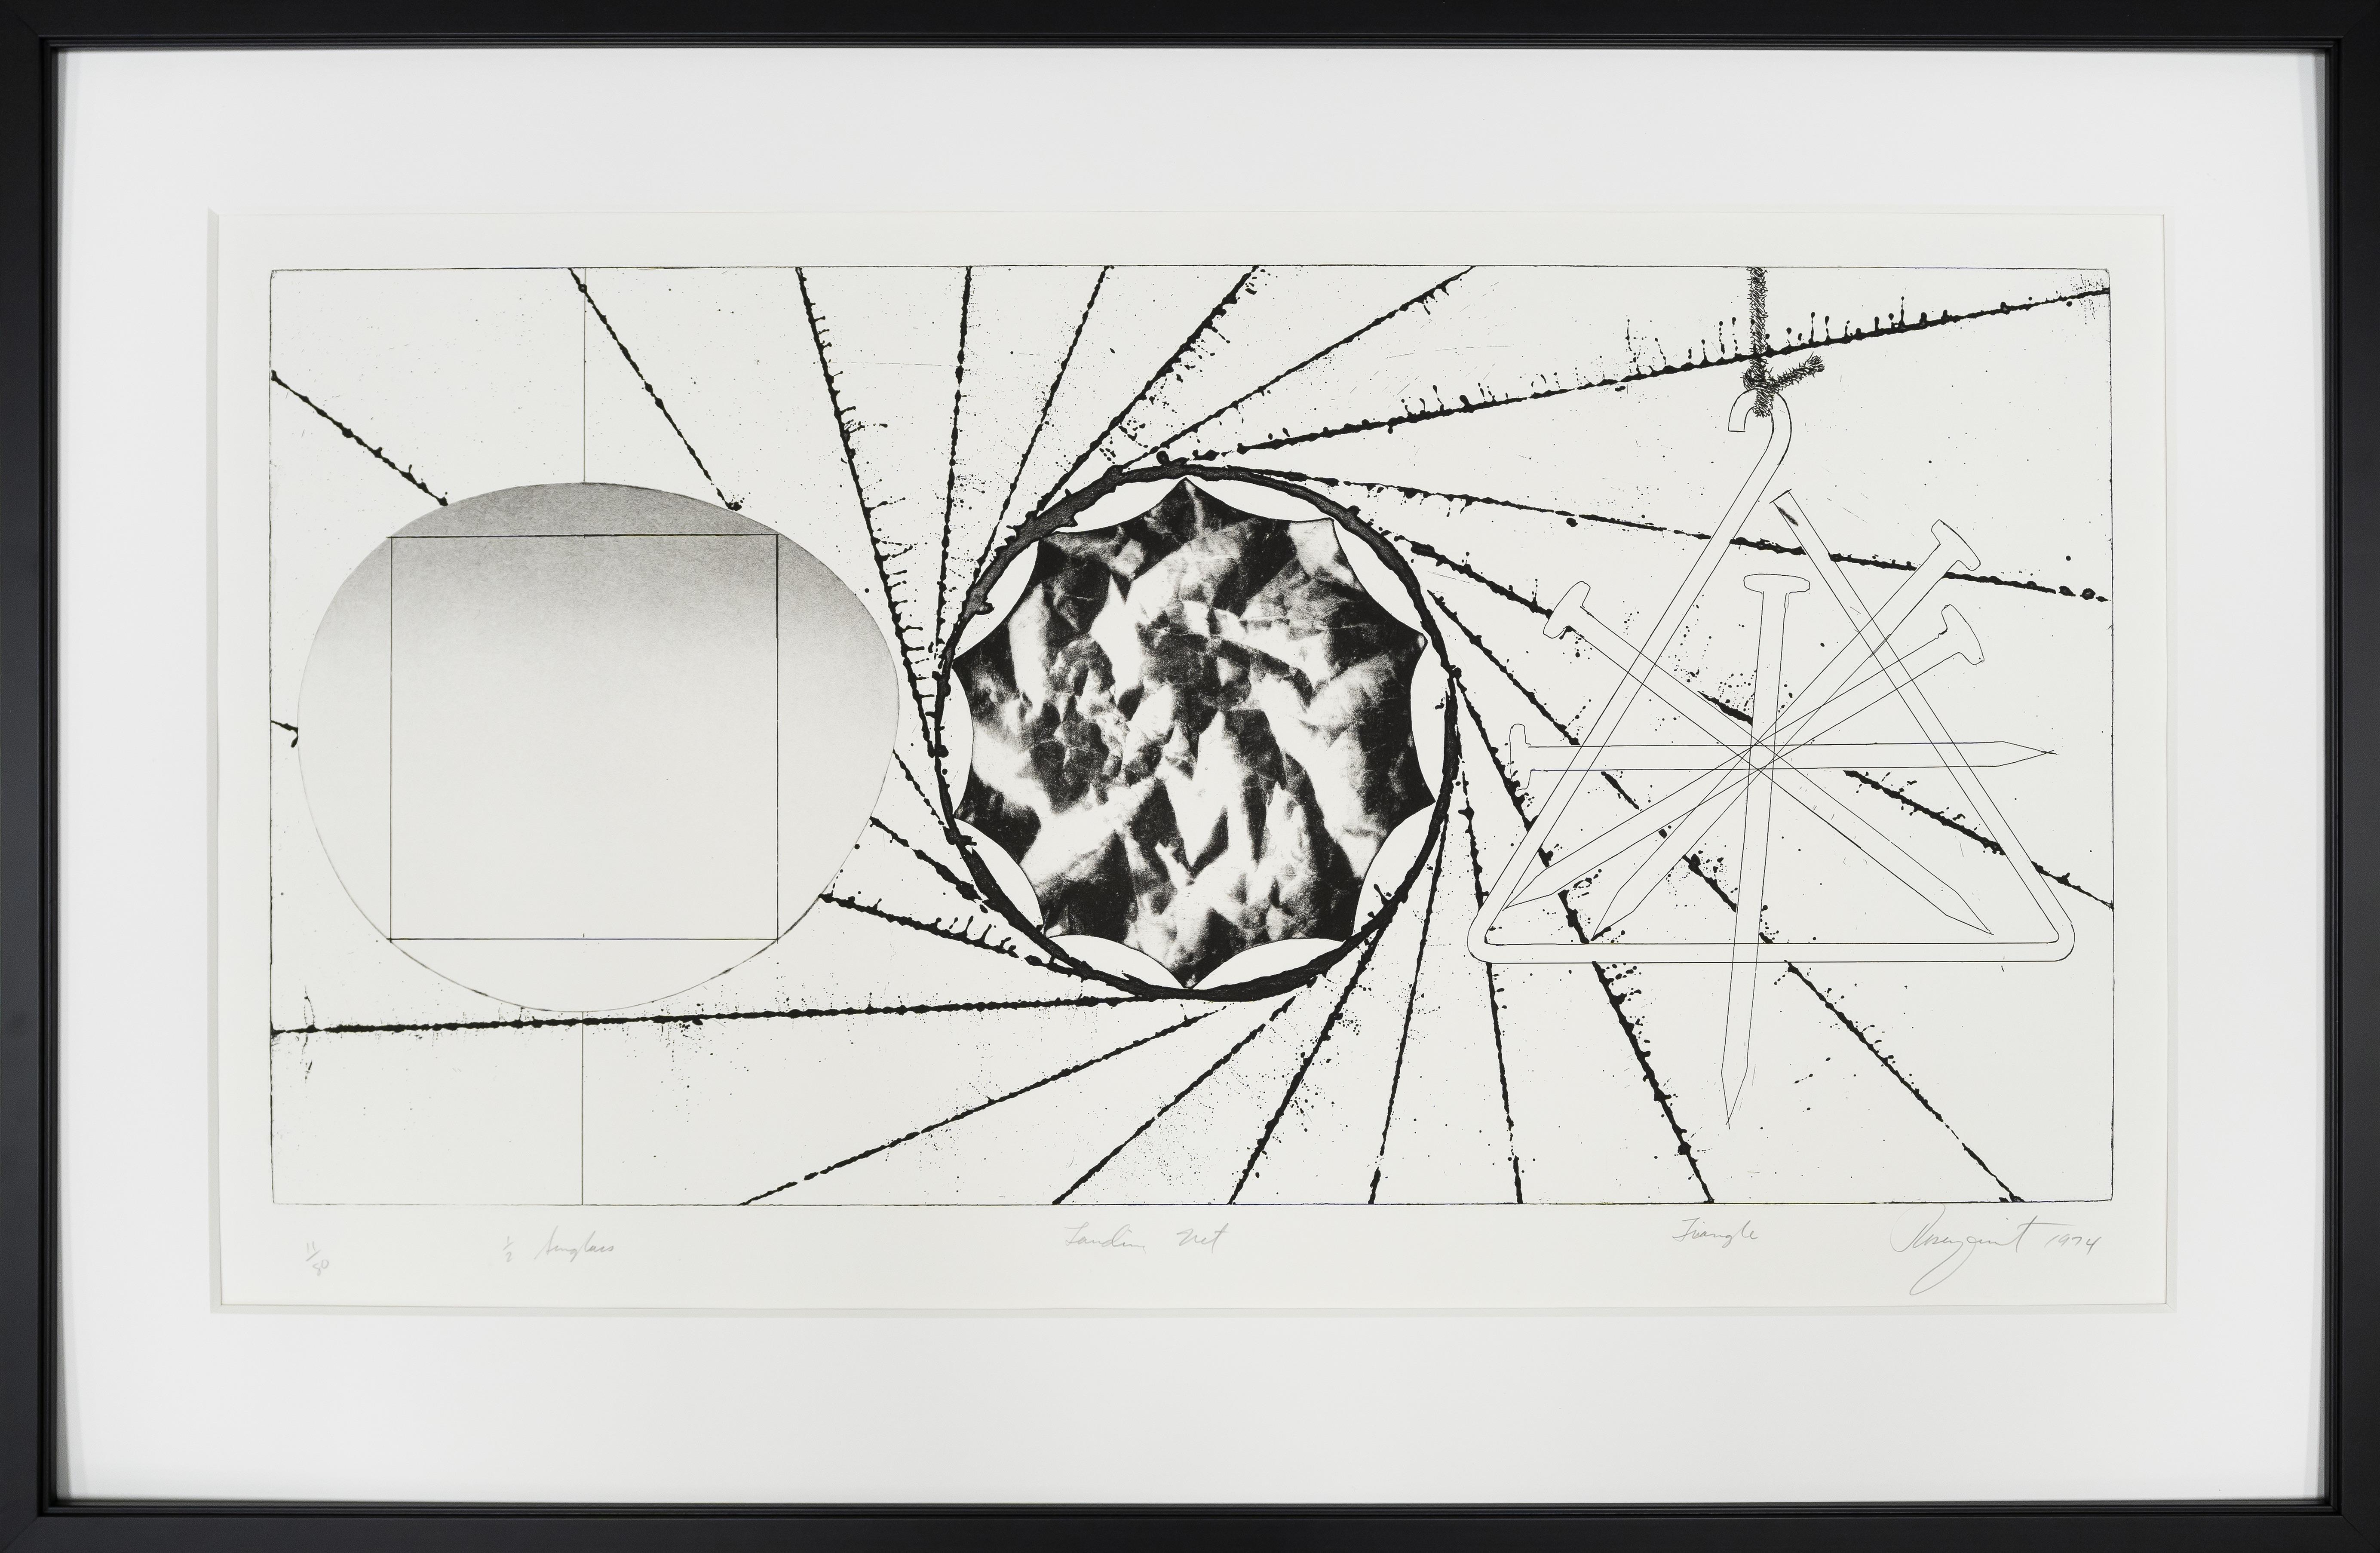 JAMES ROSENQUIST
   (B. 1933)

Filet d'atterrissage pour lunettes de soleil - Triangle

Gravure originale, 1974
Catalogue #80
Taille de la feuille : 19 1/2" x 35 1/4"
Edition numéro 11 sur 80
Signé, numéroté et daté dans la marge inférieure

James